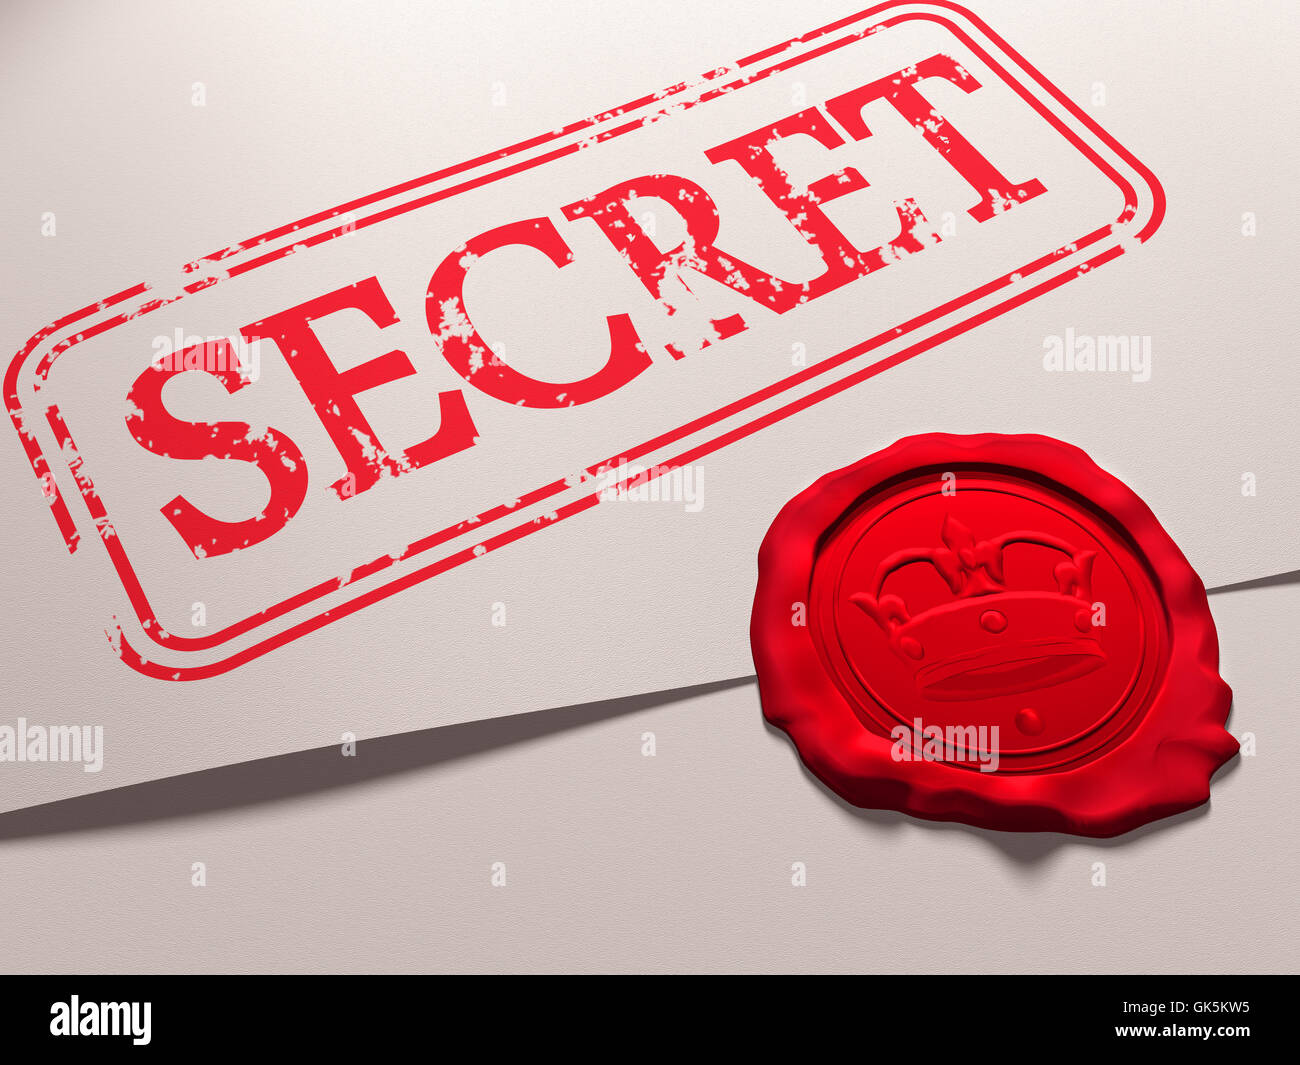 Secreto del gobierno espía Foto de stock